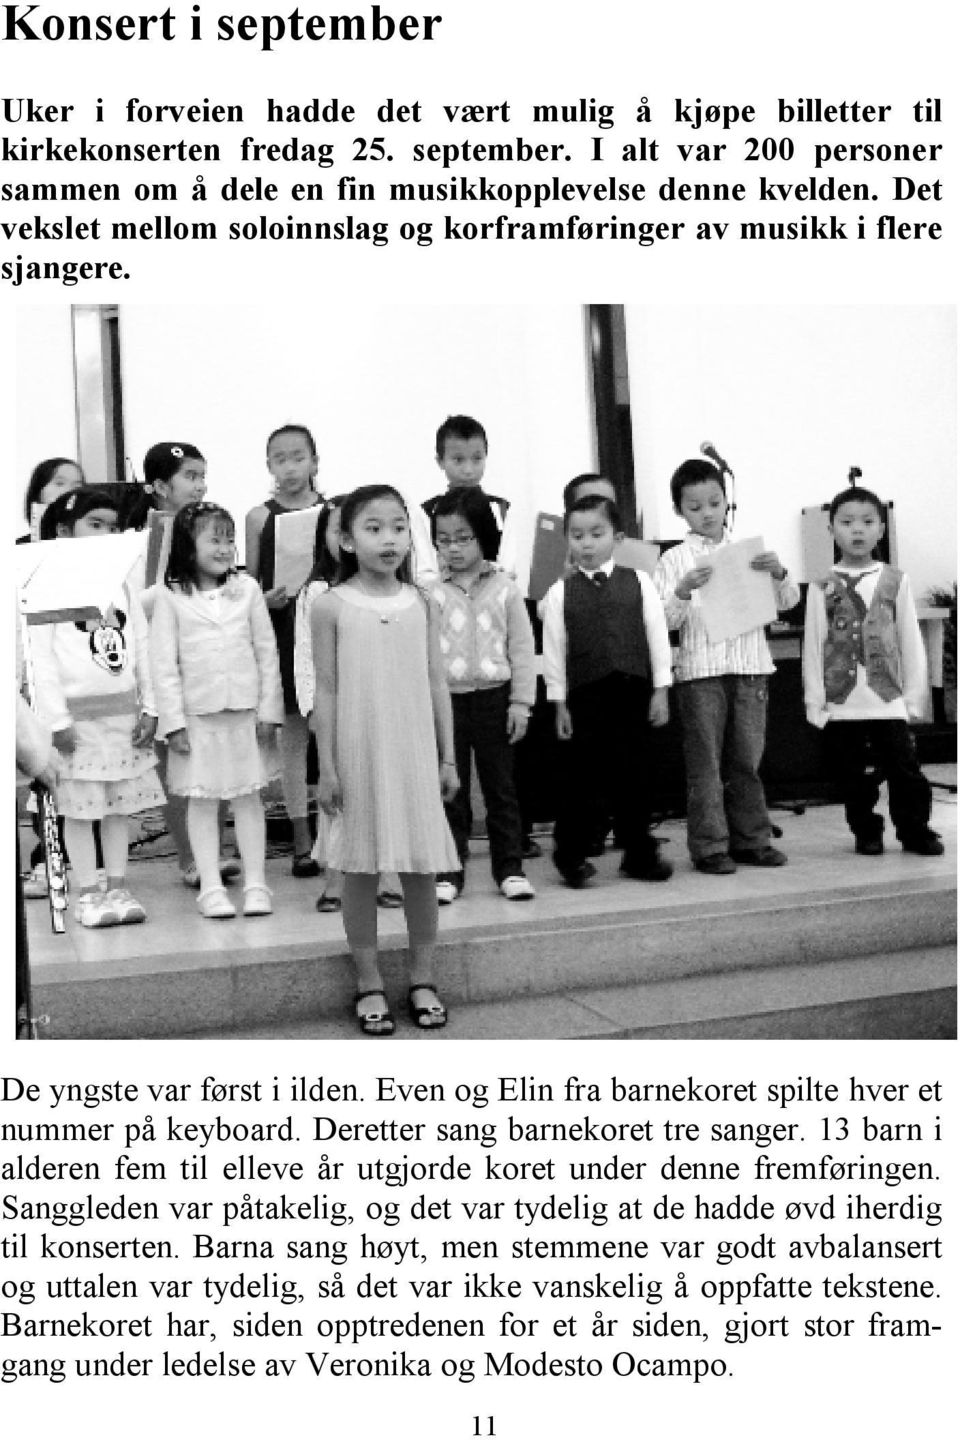 Deretter sang barnekoret tre sanger. 13 barn i alderen fem til elleve år utgjorde koret under denne fremføringen. Sanggleden var påtakelig, og det var tydelig at de hadde øvd iherdig til konserten.